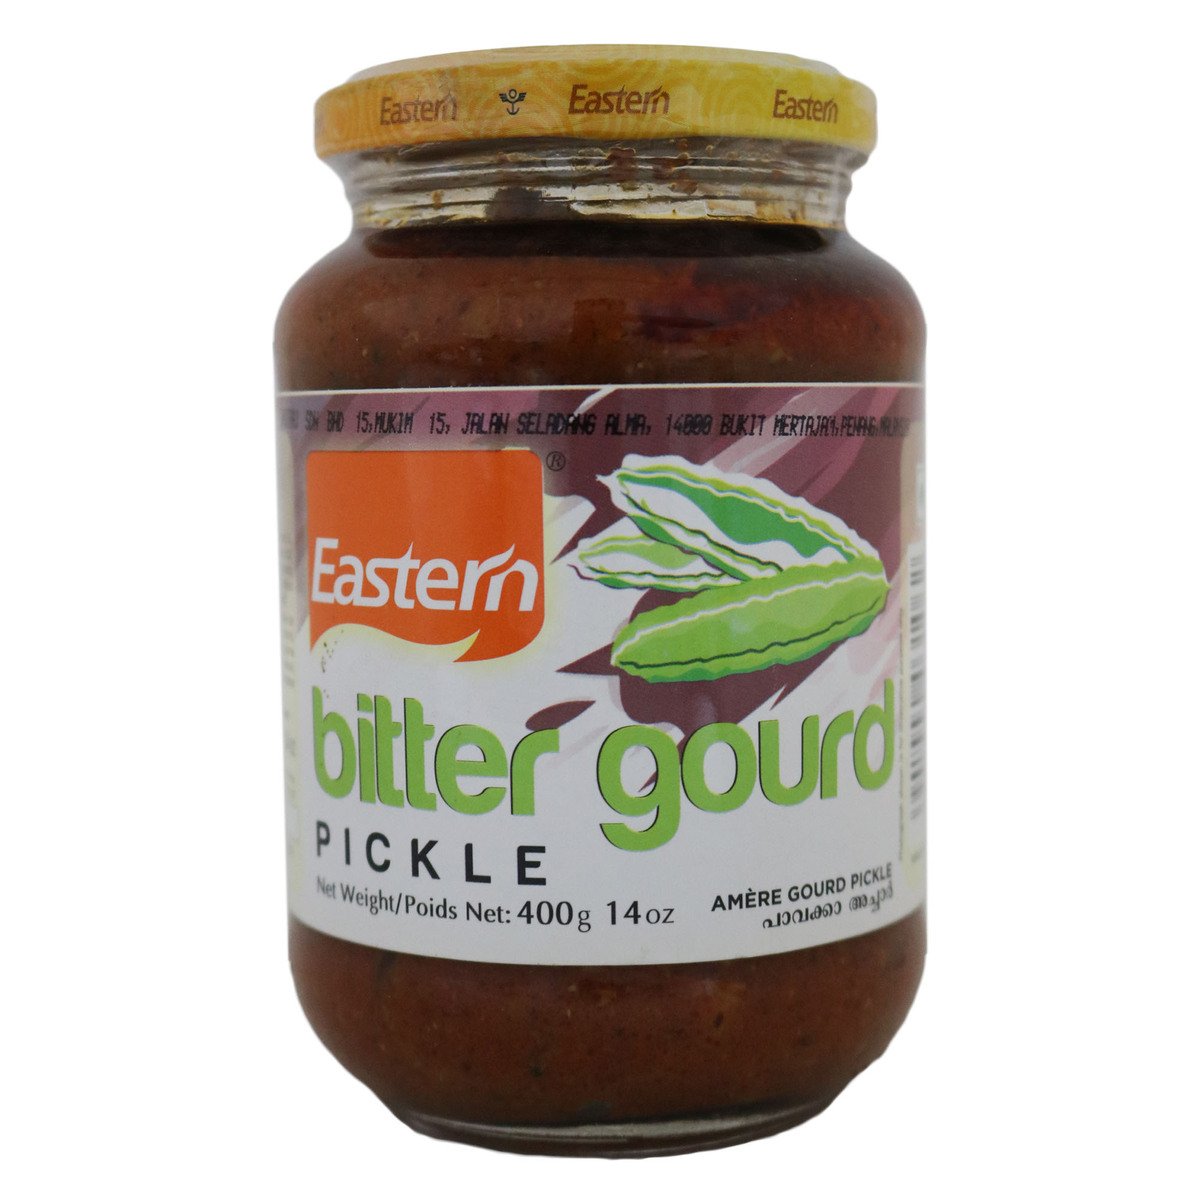 Eastern Bittergourd Pickle 400g